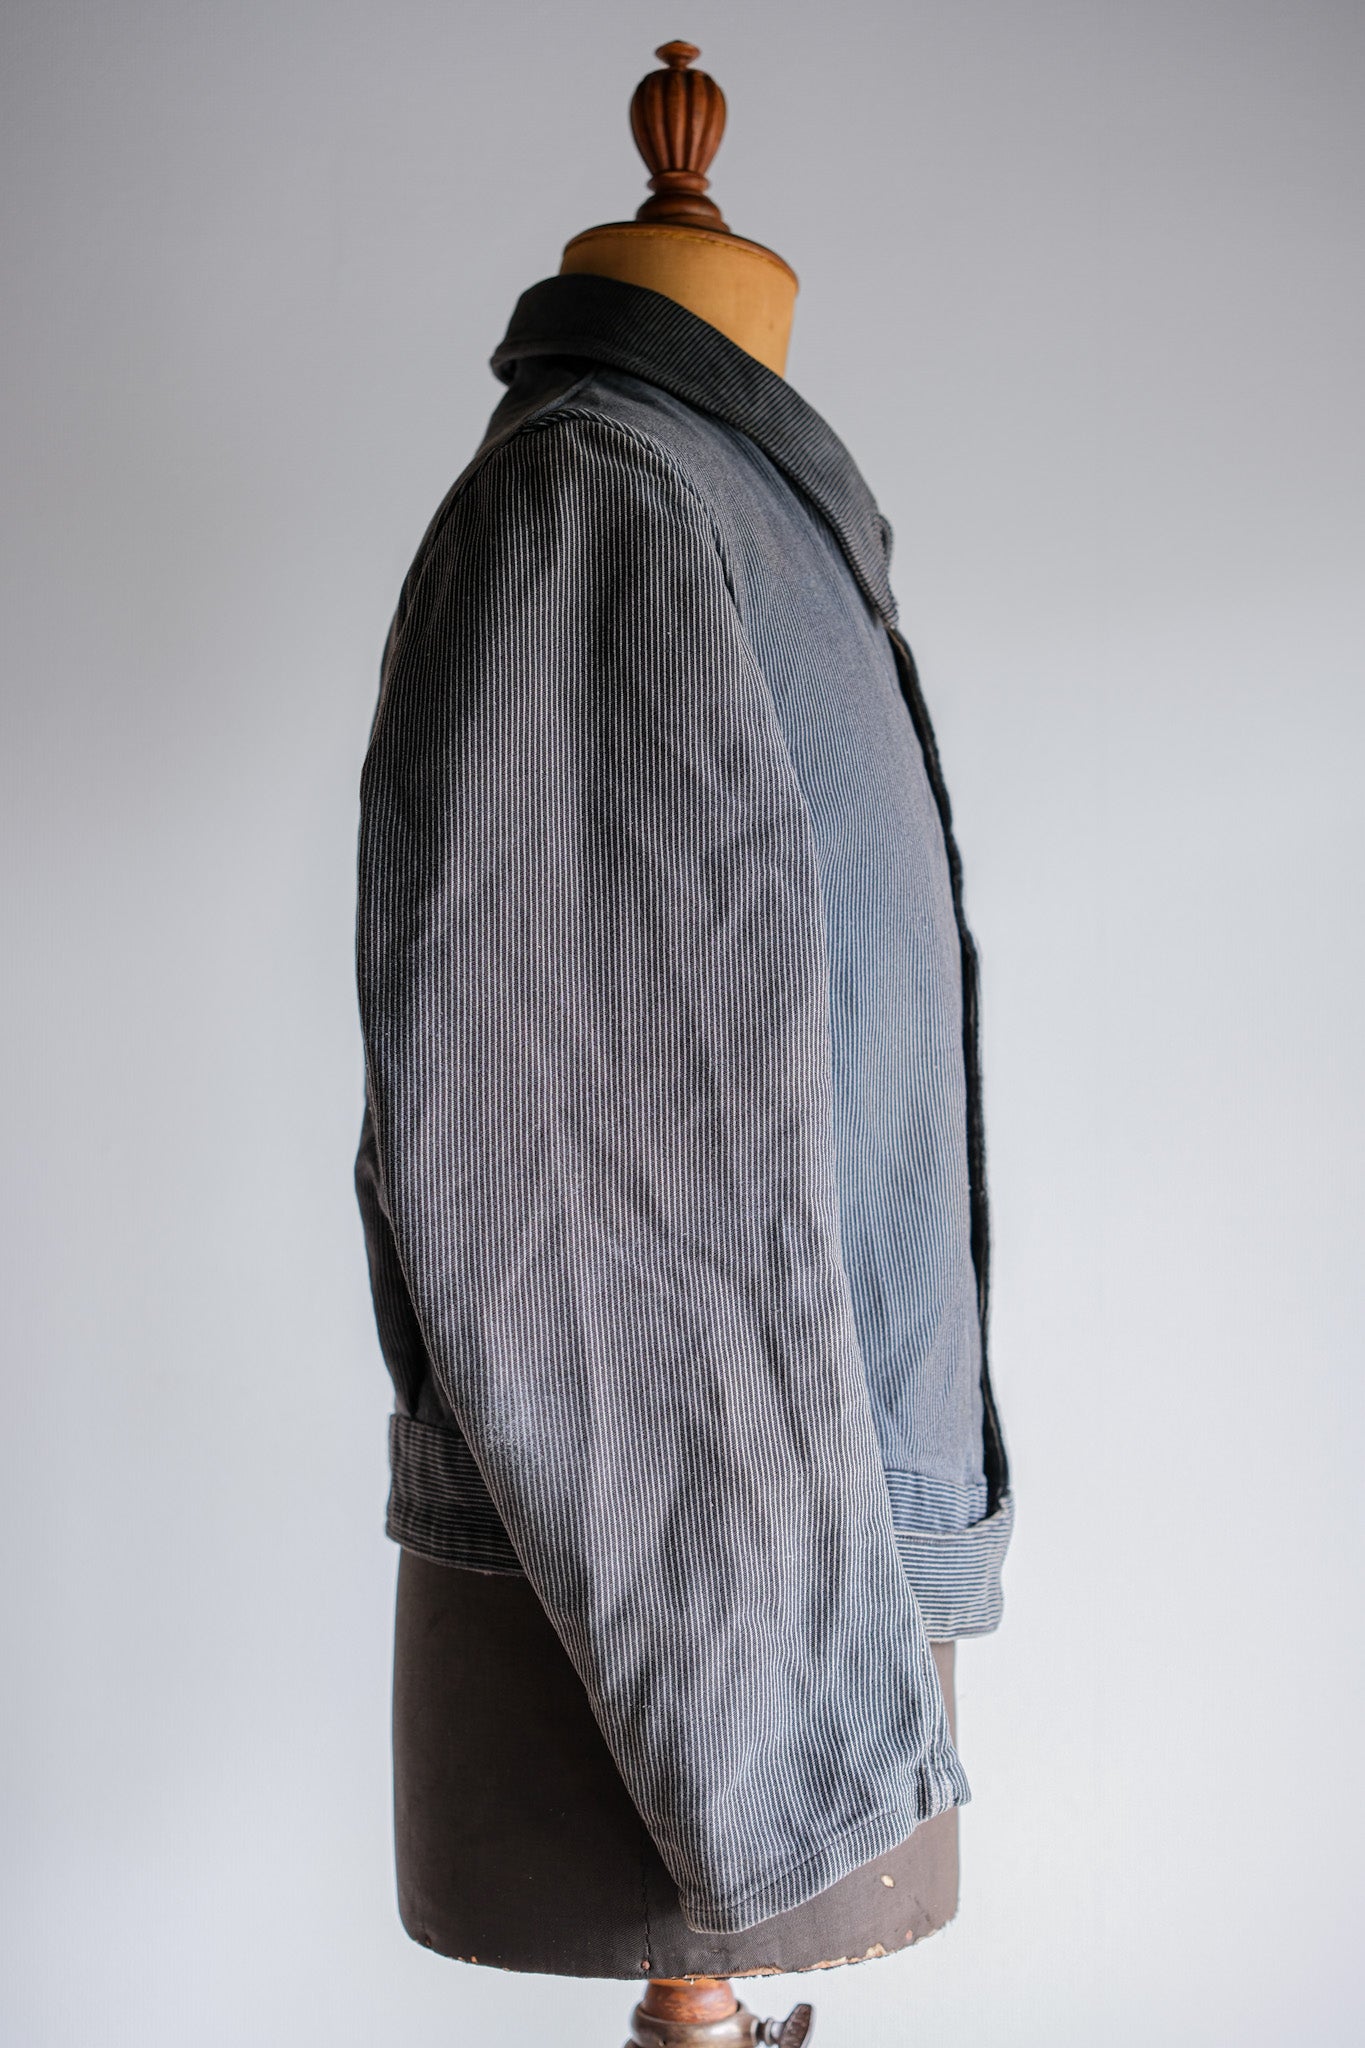 [~ 40 '] 벨기에 빈티지 인쇄 몰드 피부 포로 재킷